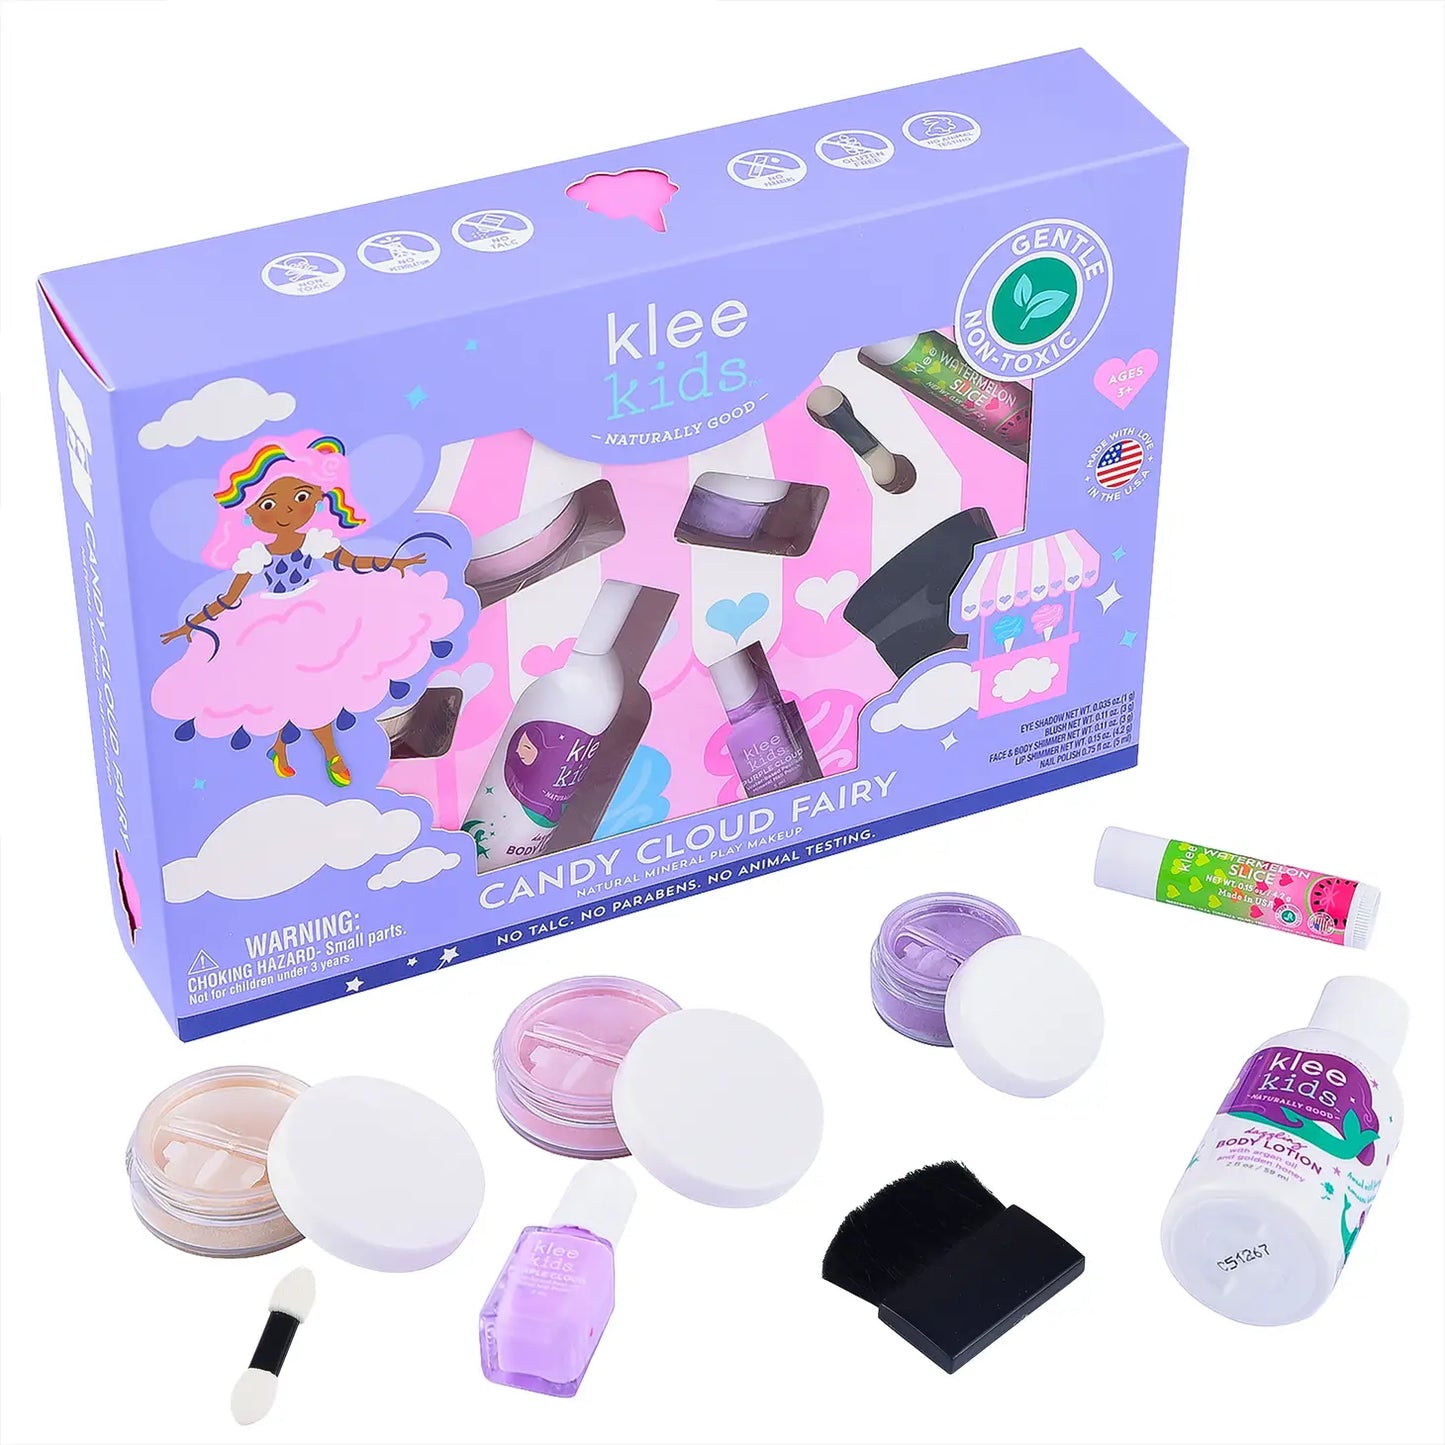 Candy Cloud Fairy - Kit de 6 piezas de maquillaje Natural Play para niños de Klee